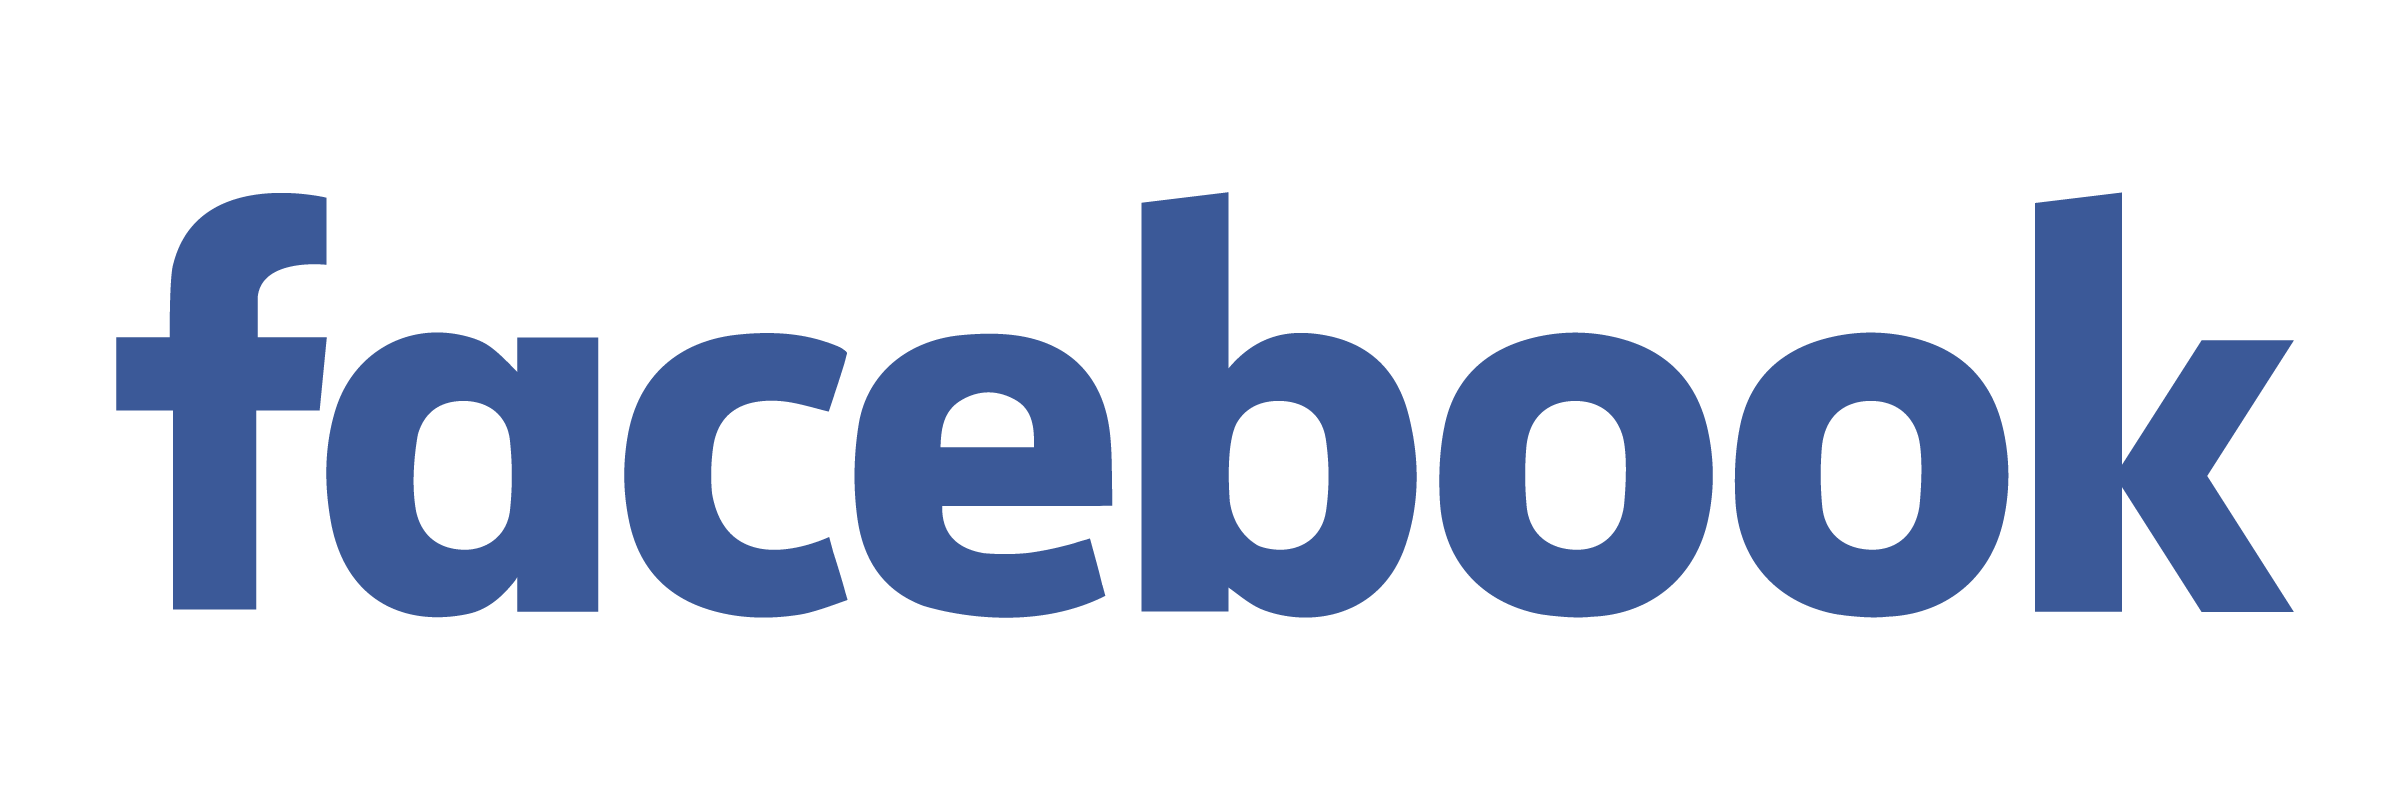 facebook-logo-full-transparent